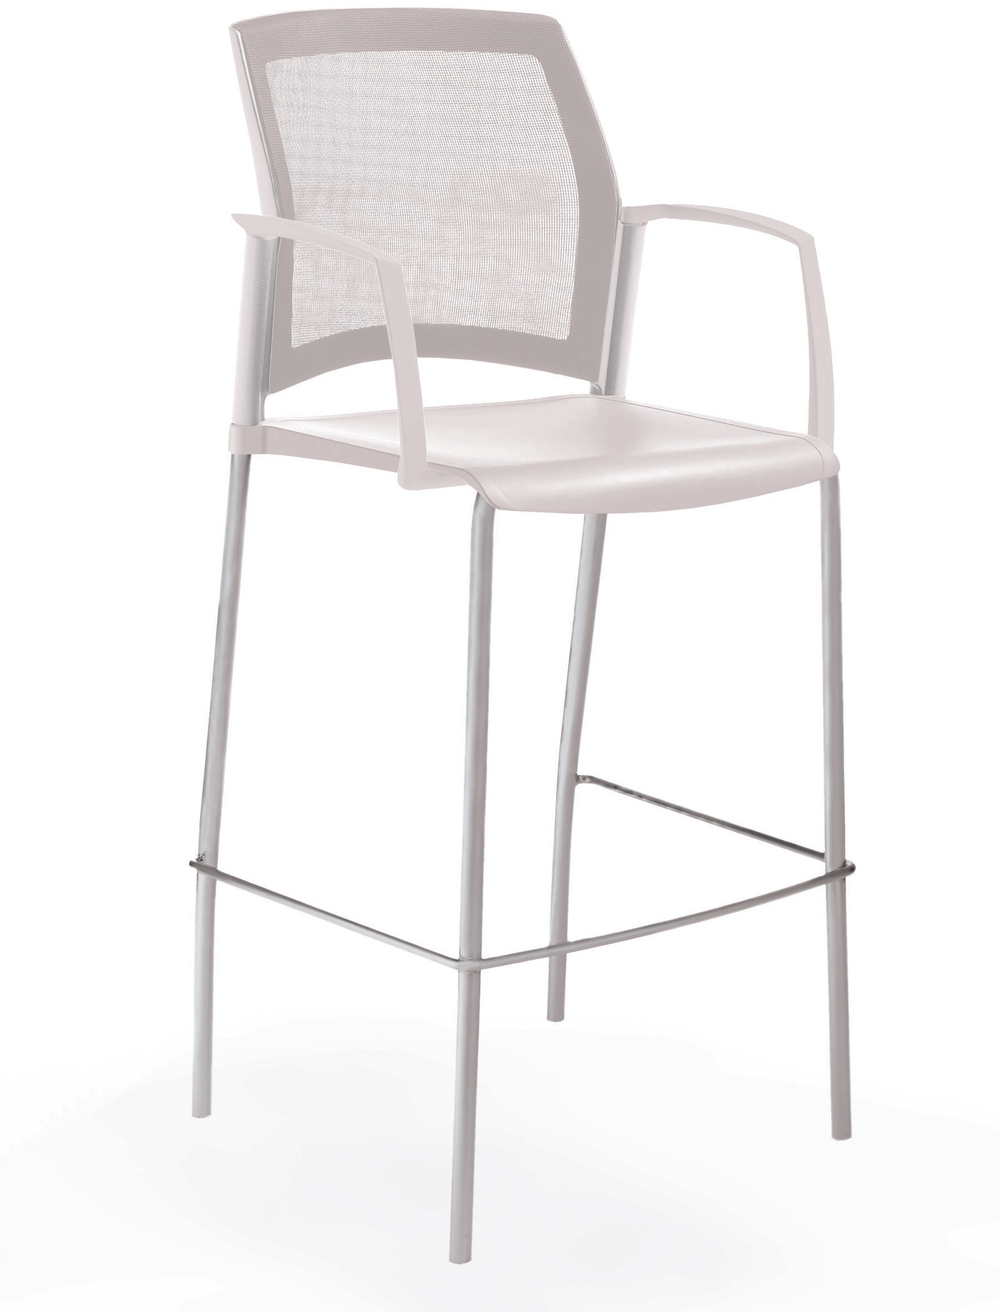 стул Rewind стул барный на 4 ногах, каркас серый, пластик белый, спинка-сетка, с закрытыми подлокотниками